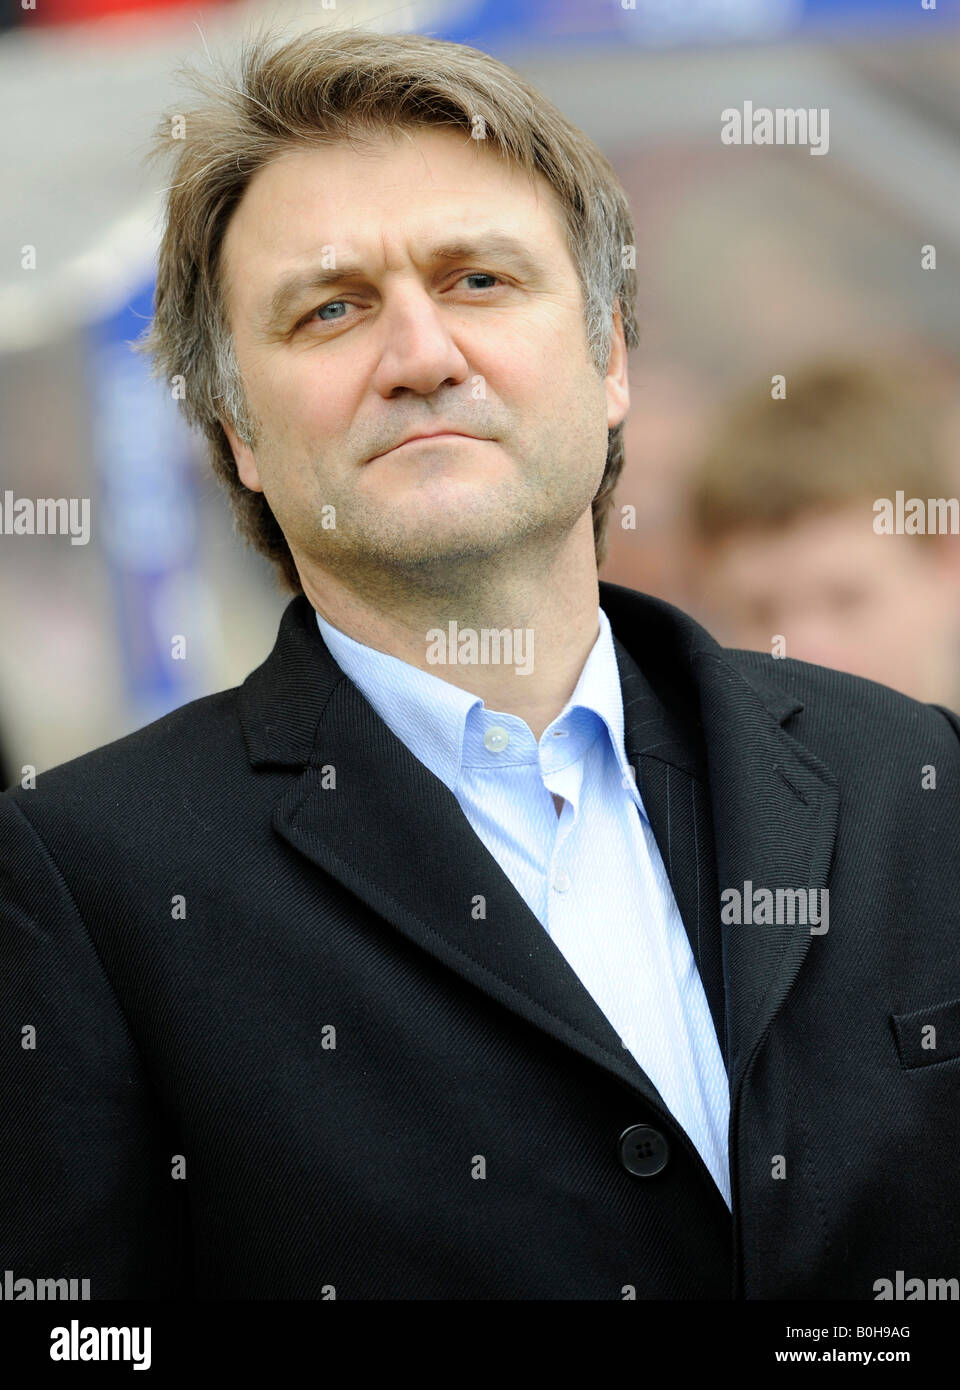 Head of sports Dietmar Beiersdorfer, Hamburger SV football club Stock Photo